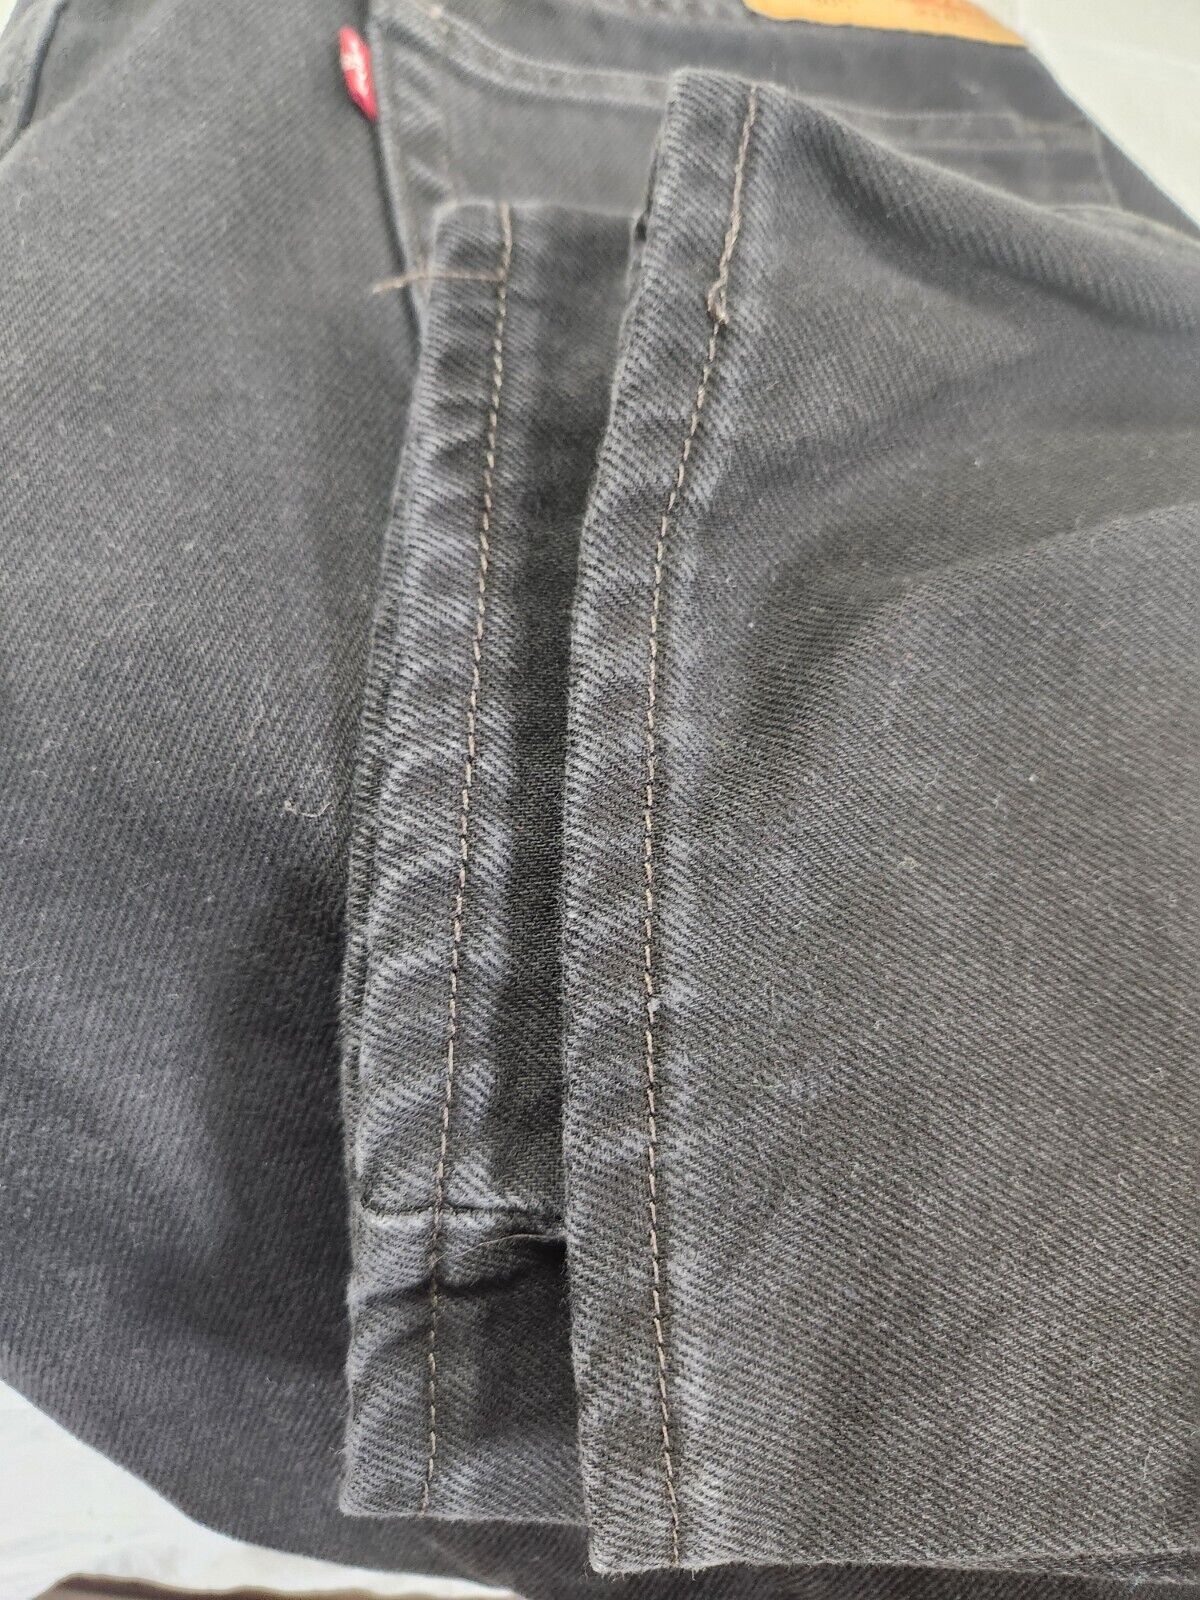 Men's 40x30 Black Levi's Jeans 505 Red Tab EUC - image 6